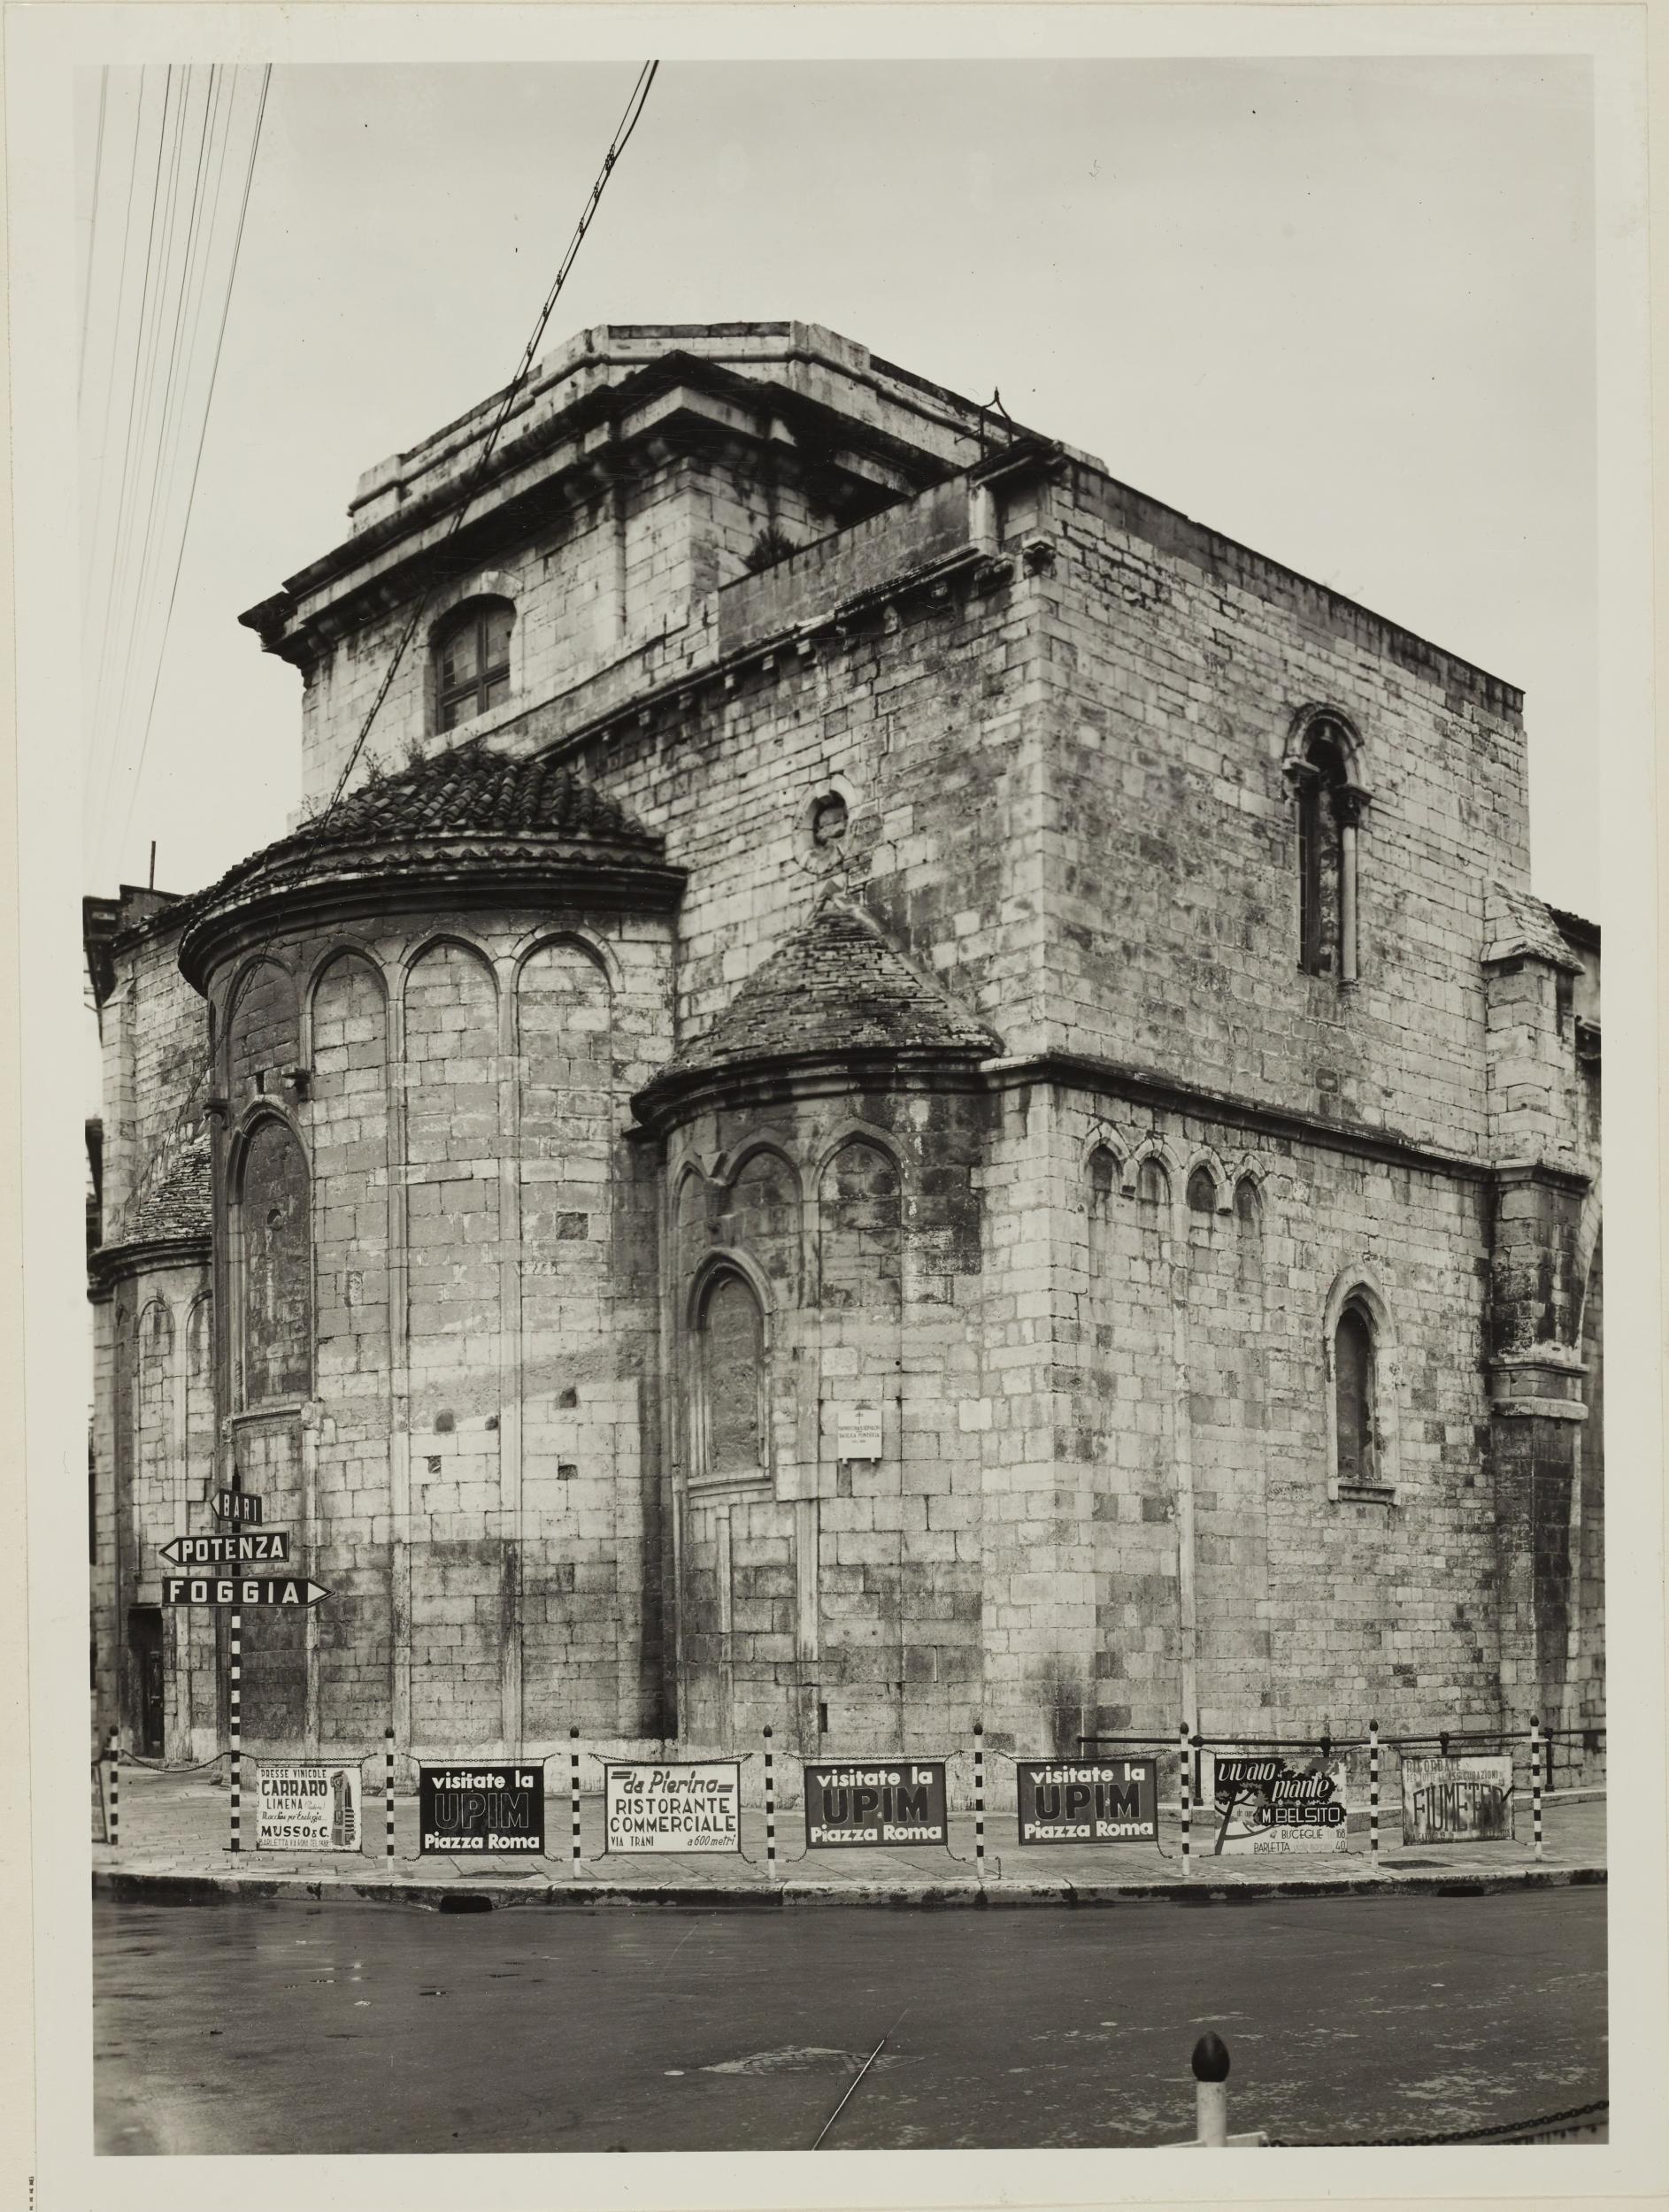 Fotografo non identificato, Barletta - Chiesa SS. Sepolcro, abside, 1956–1957, gelatina ai sali d'argento/carta, MPI6023030